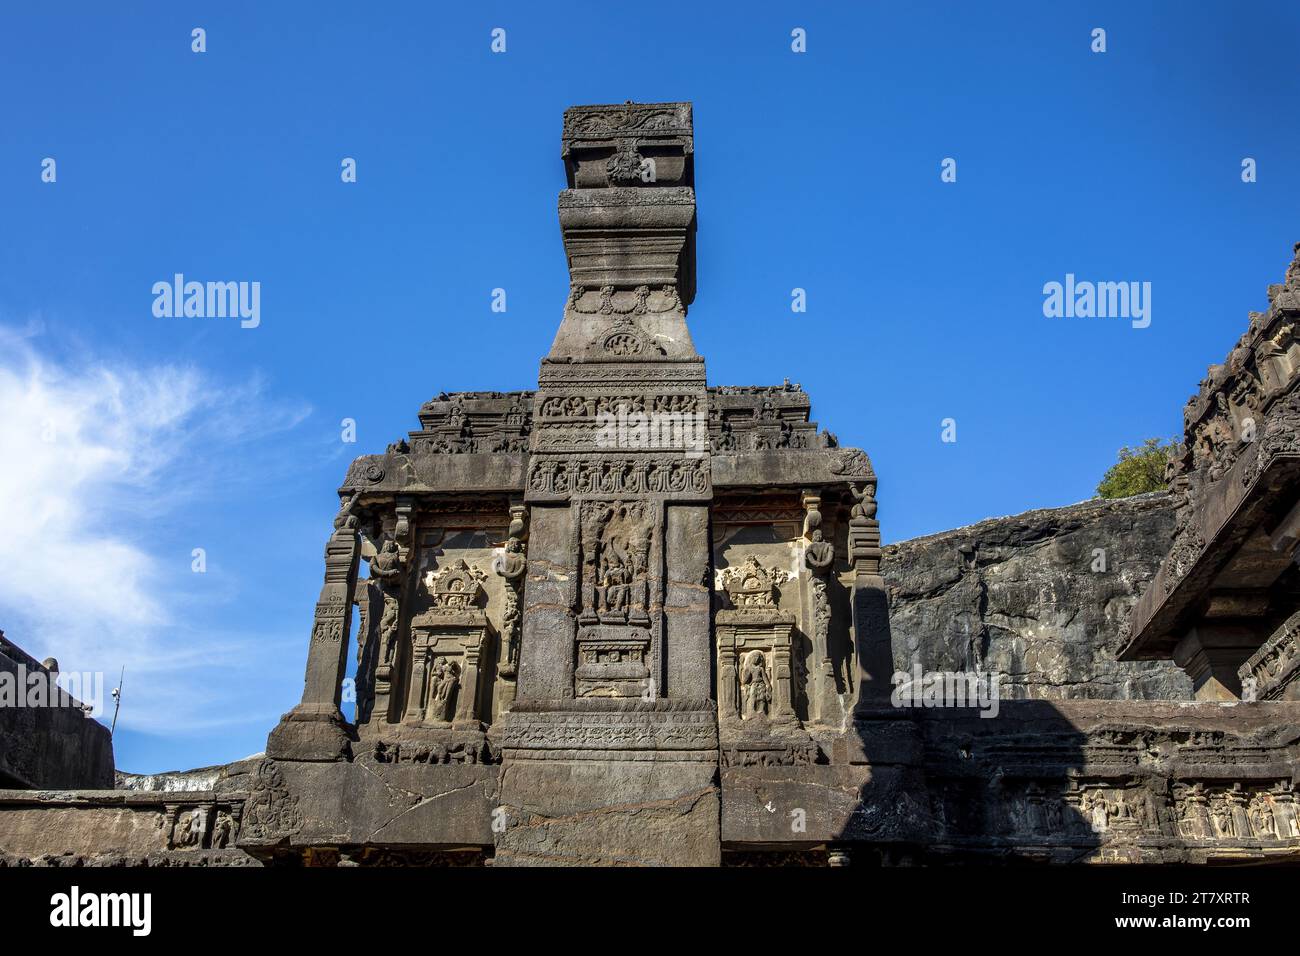 Pierre Diya Stambha pilier dans le temple de Kailash, grottes d'Ellora, site du patrimoine mondial de l'UNESCO, Maharashtra, Inde, Asie Banque D'Images